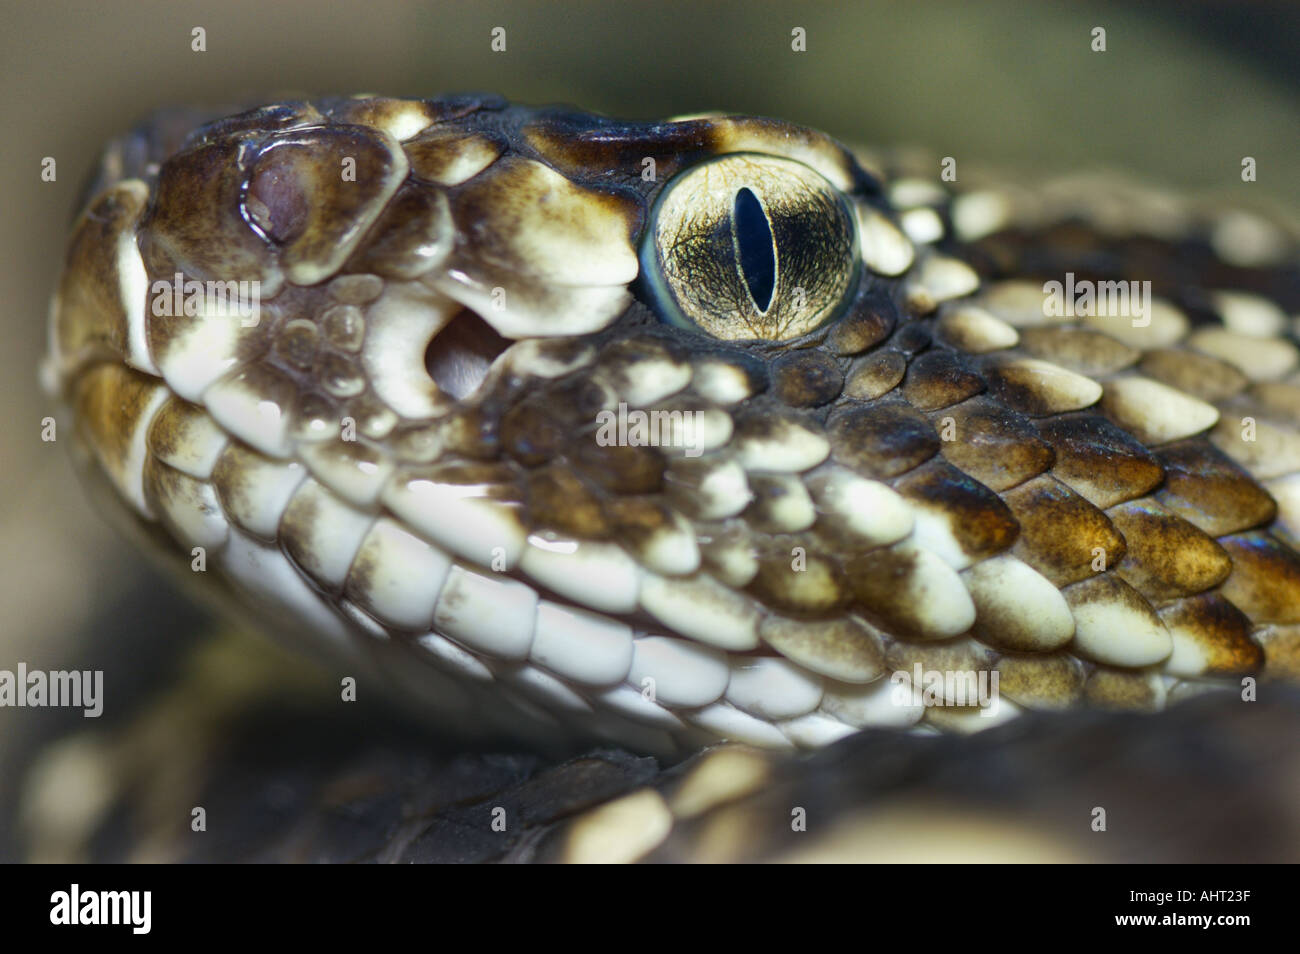 rattle snake RATTLESNAKE Klapperschlange CROTALUS DURISSUS Stock Photo